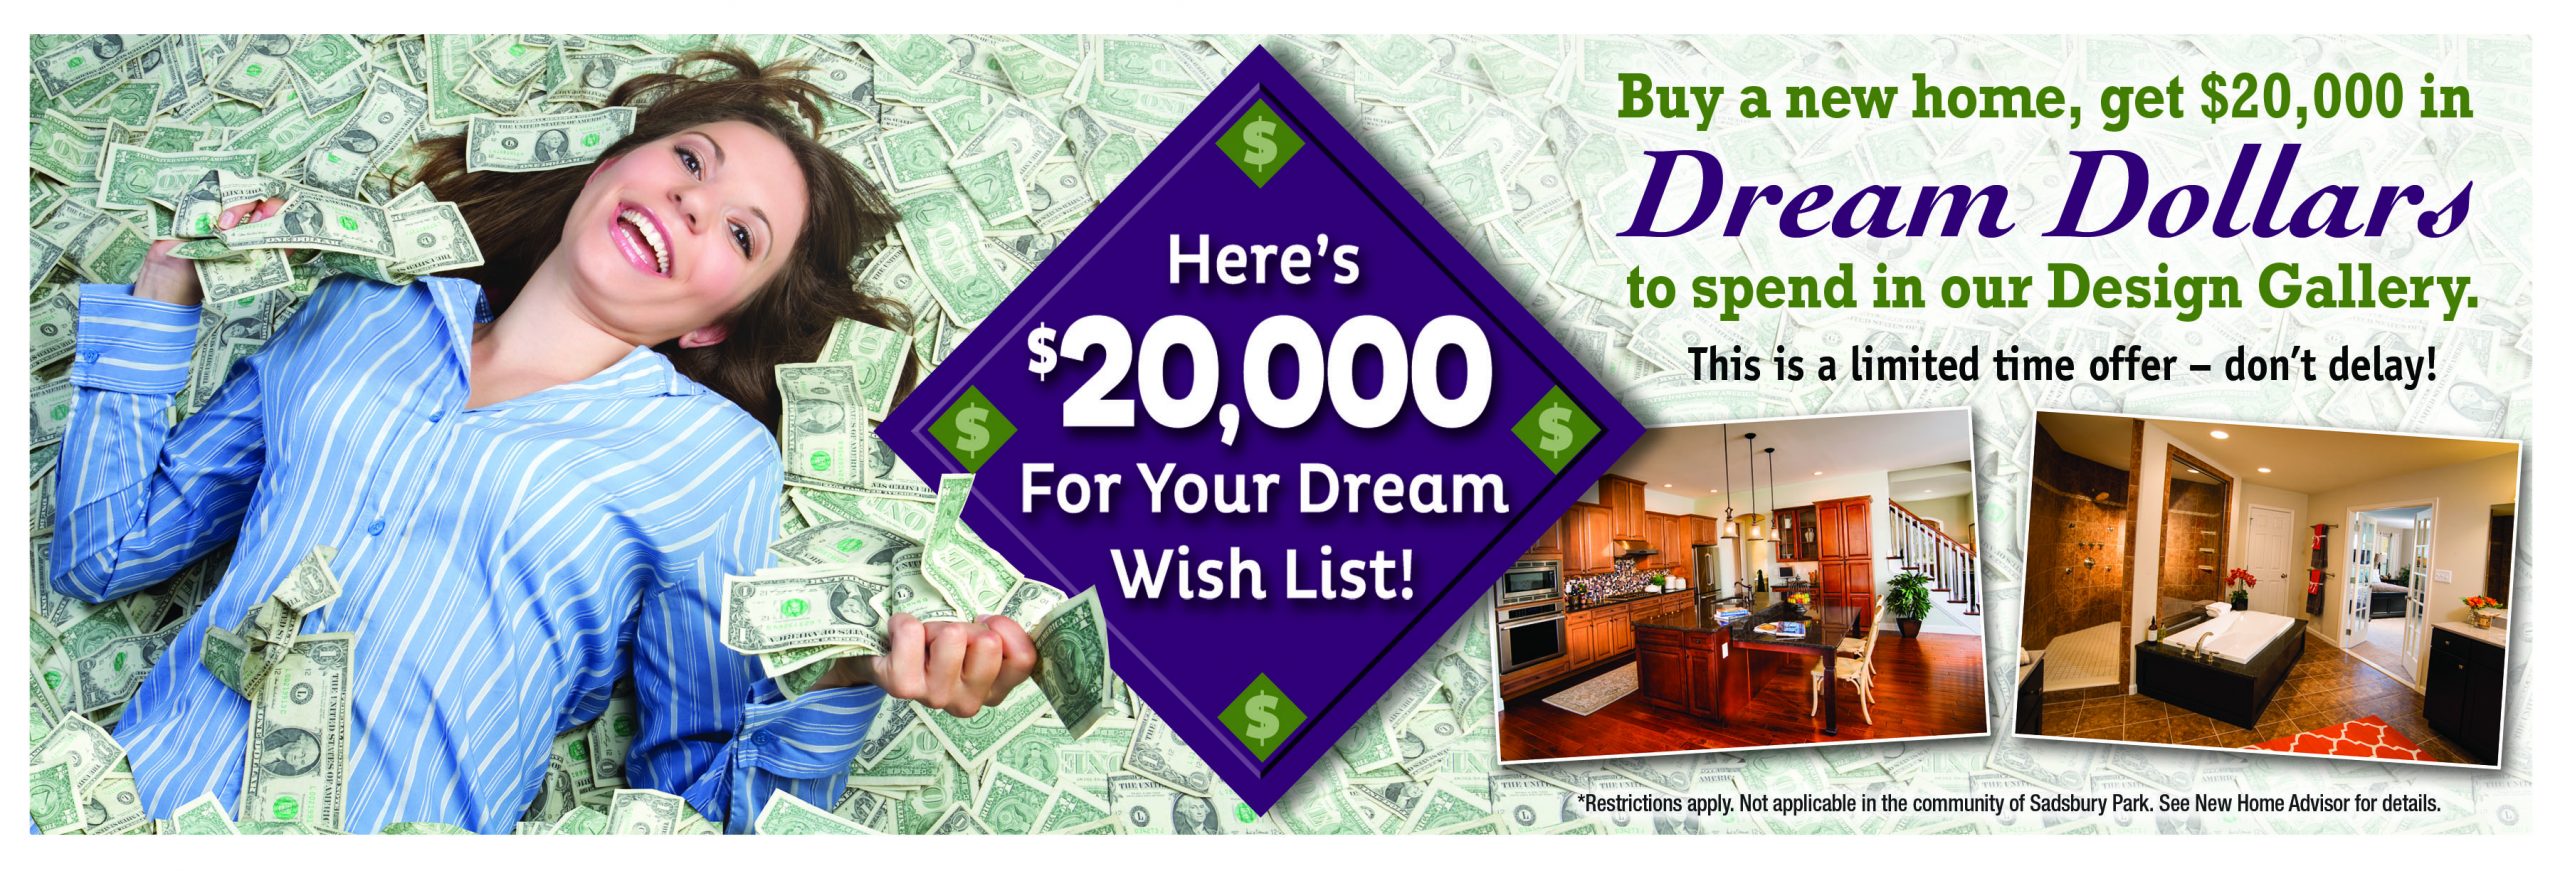 $20,000 Dream Dollar Flash Ad